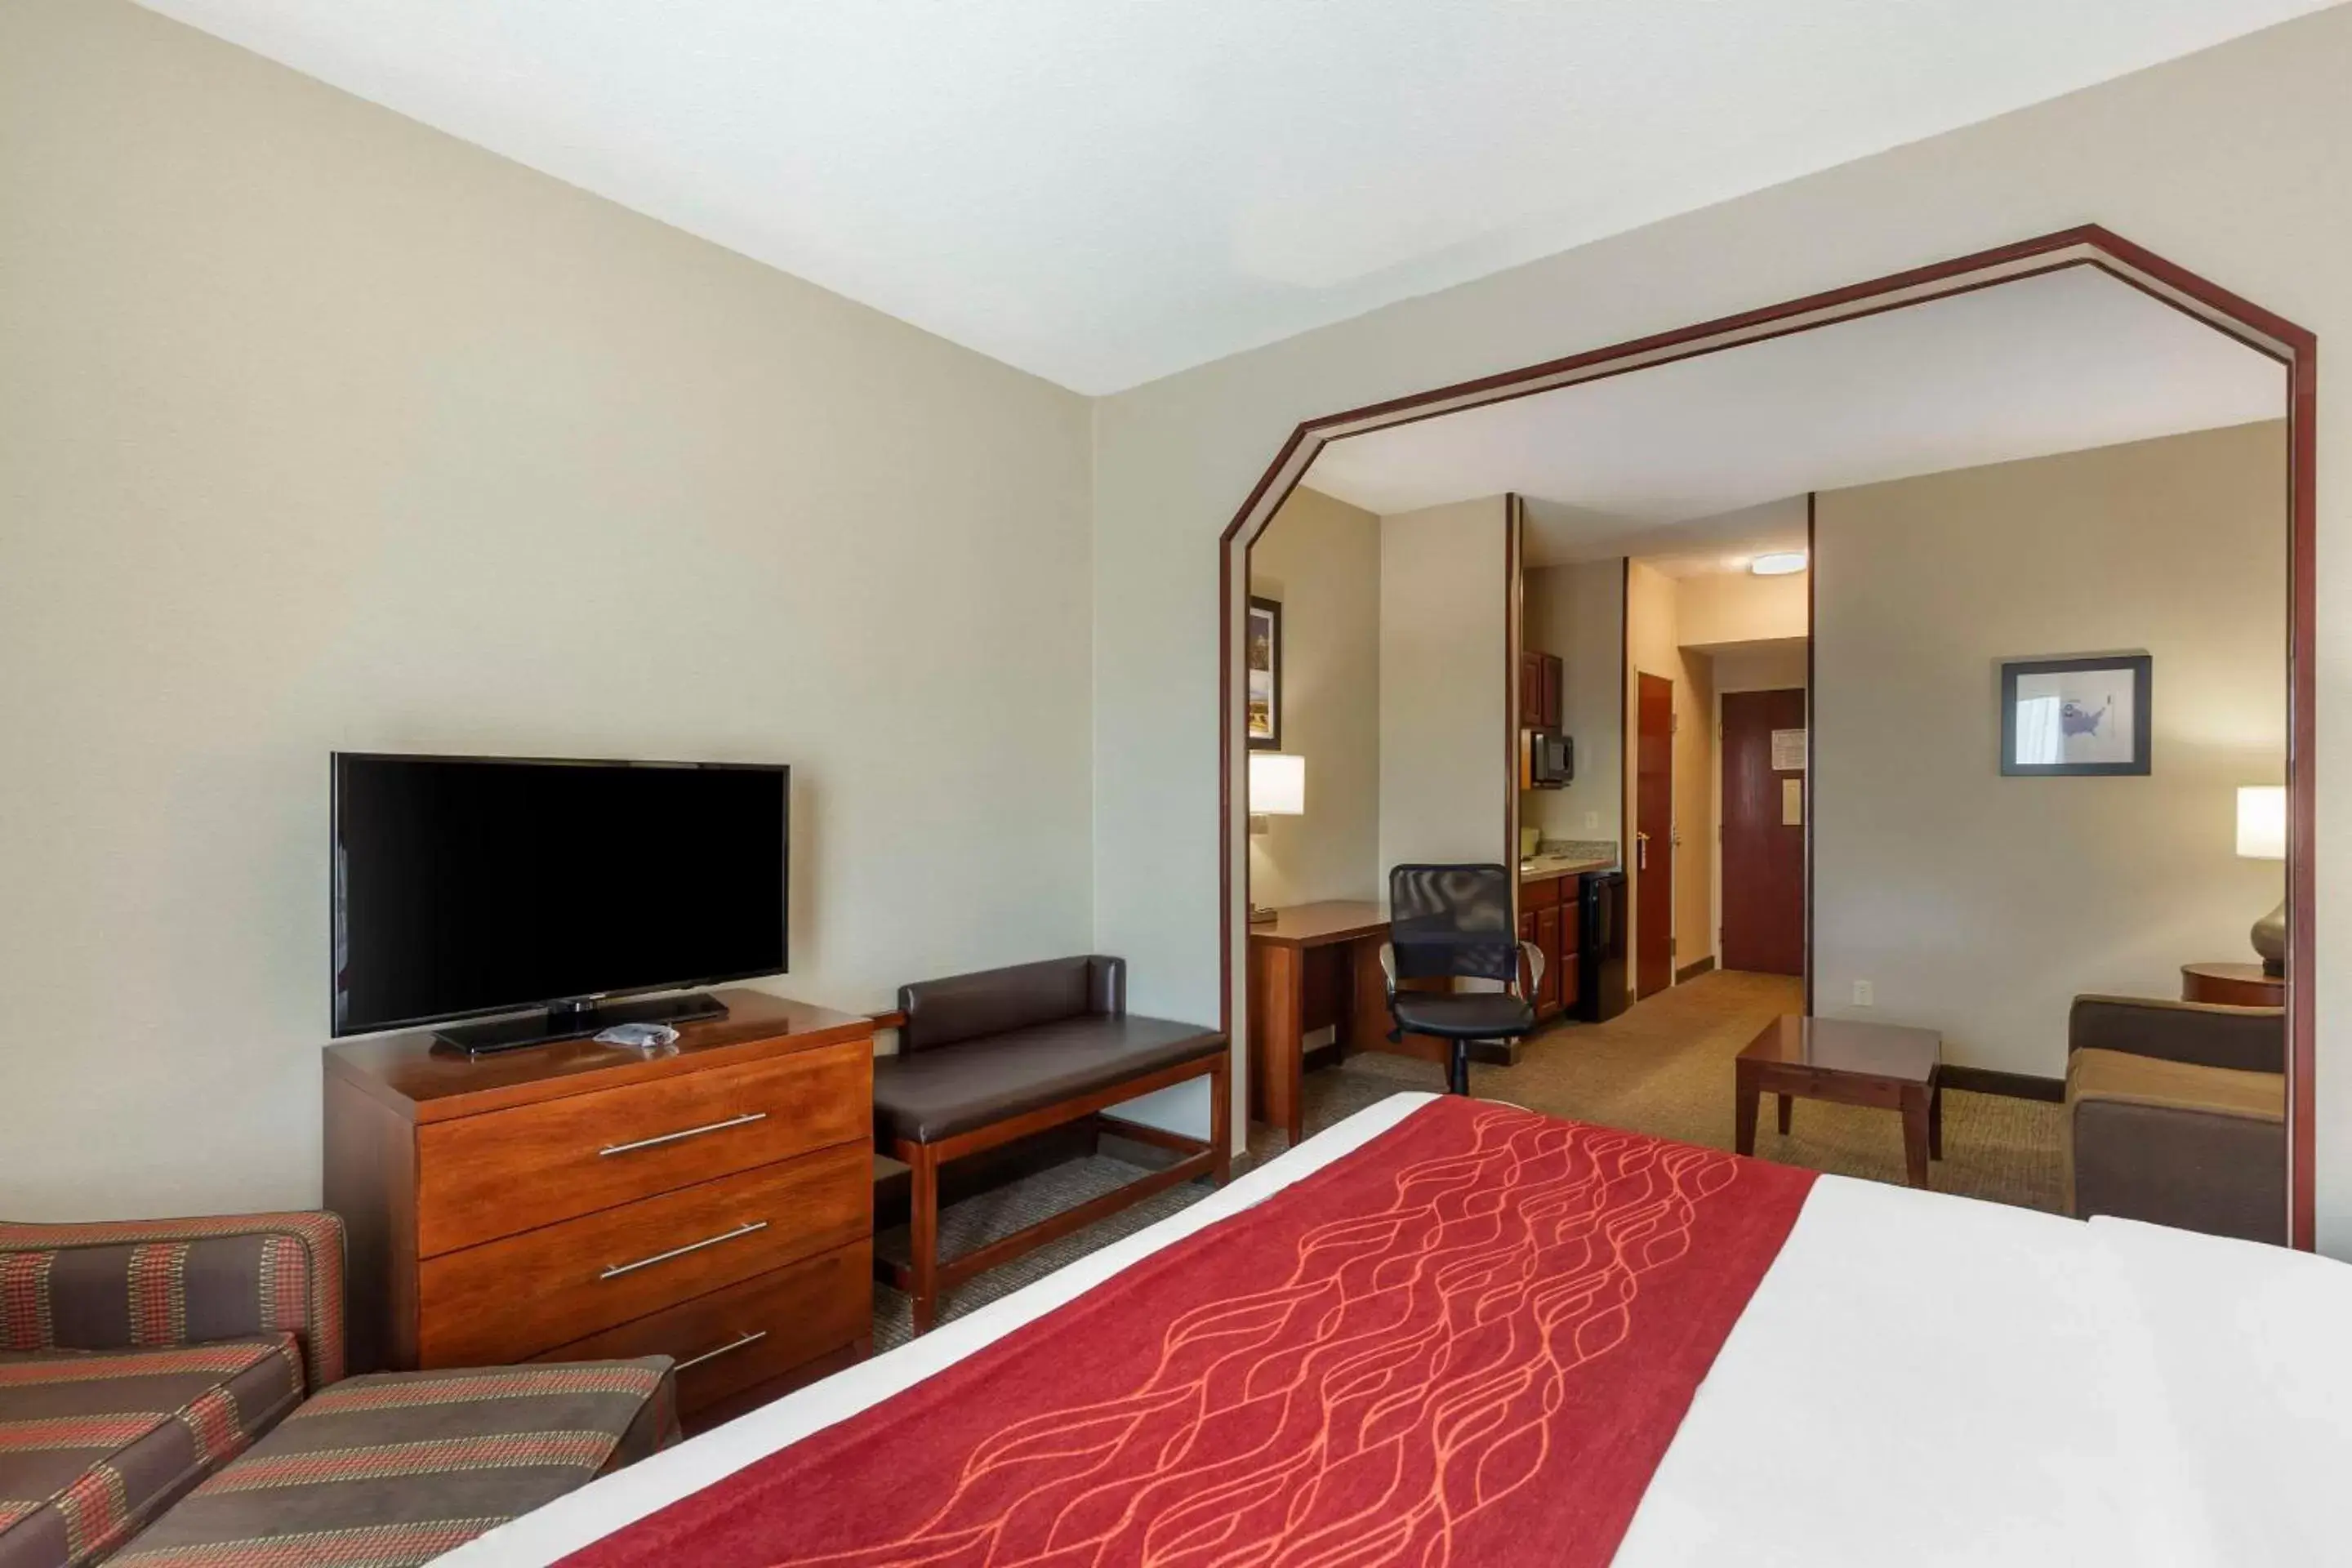 Bedroom, TV/Entertainment Center in Comfort Inn & Suites Rapid City